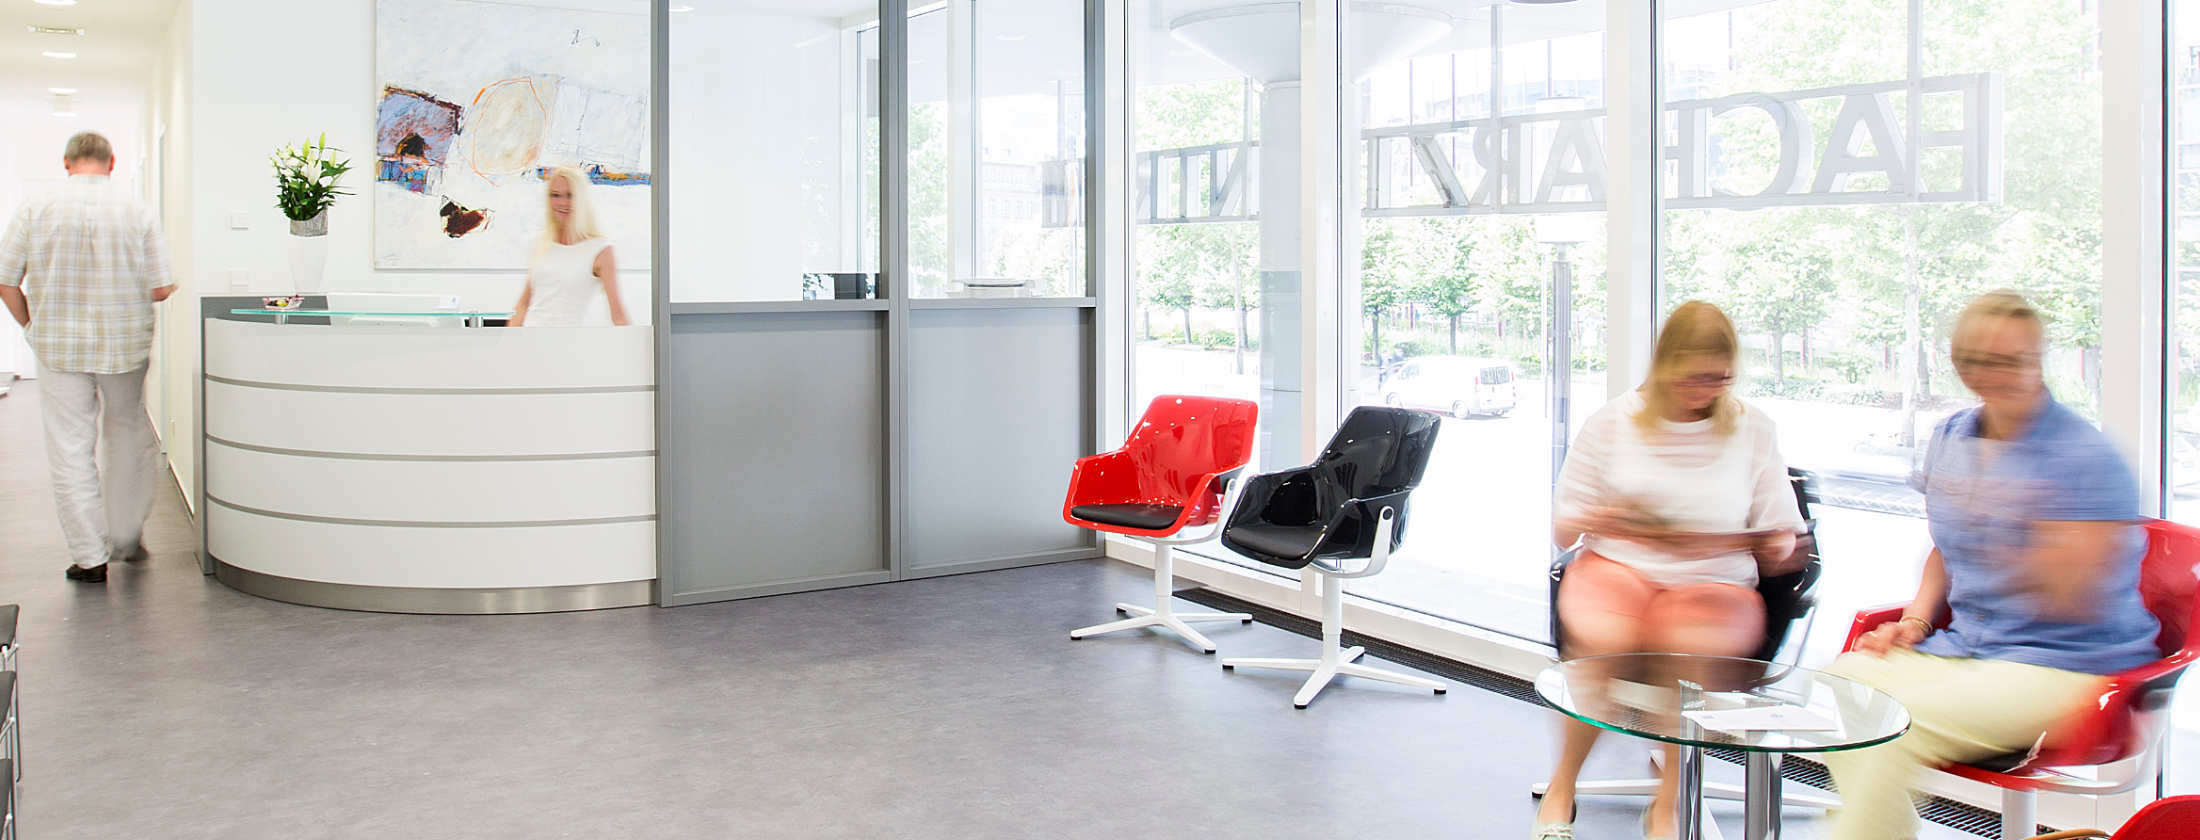 Приемная частной клиники Бергер в Вест-энд, Франкфурт. Можно присесть на дизайнерские стулья и подождать пока медицинский работник за округлённой регистрацией подойдёт к вам для консультации о пластической хирургии. Гигантские окна наполняют зал светом.